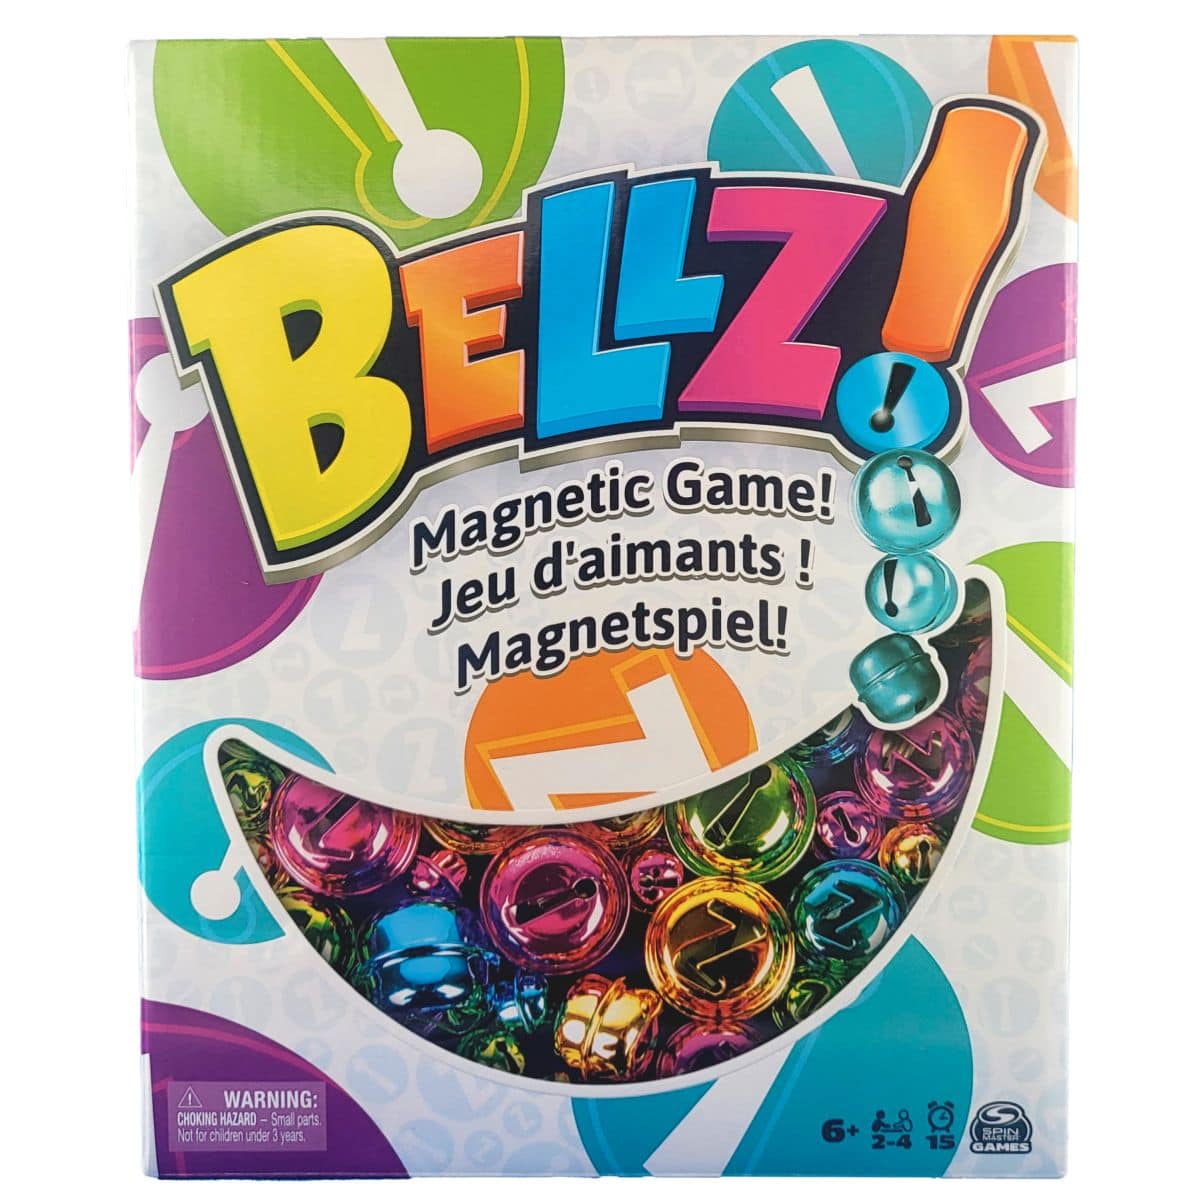 Bellz! - Magnetspiel